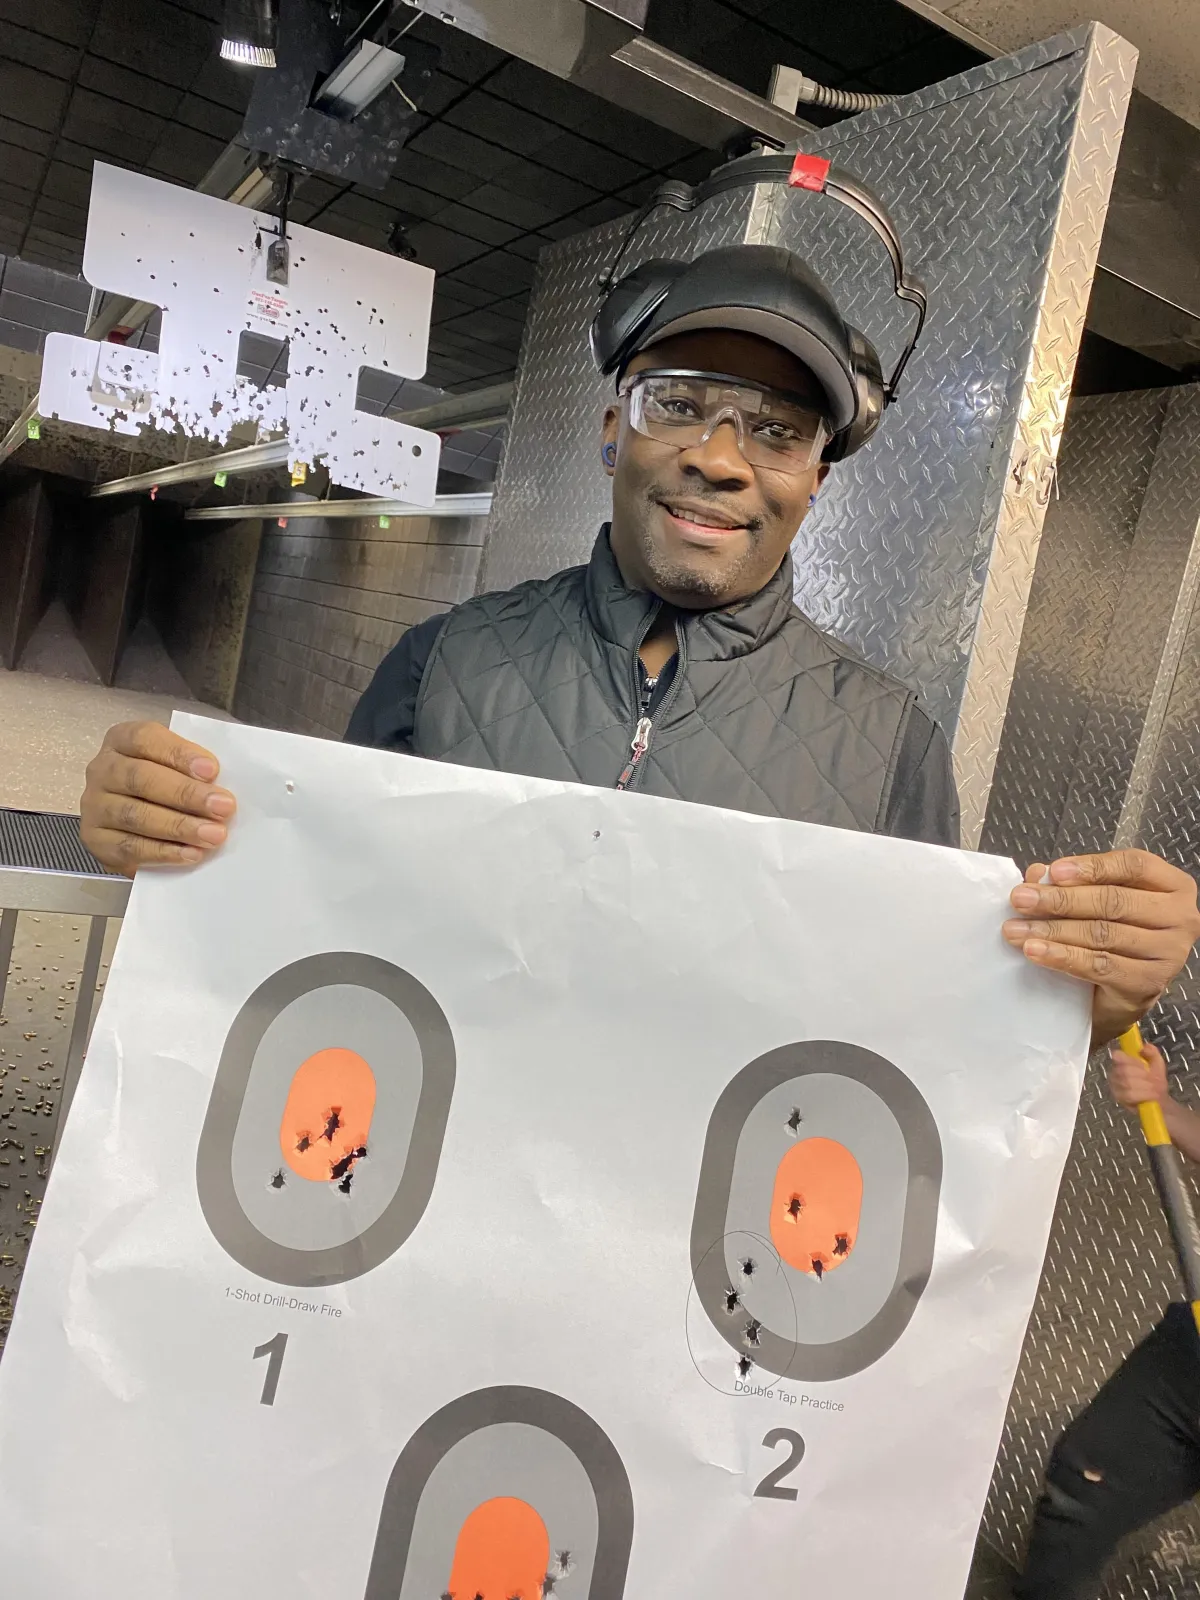 Male student holding target at gun range